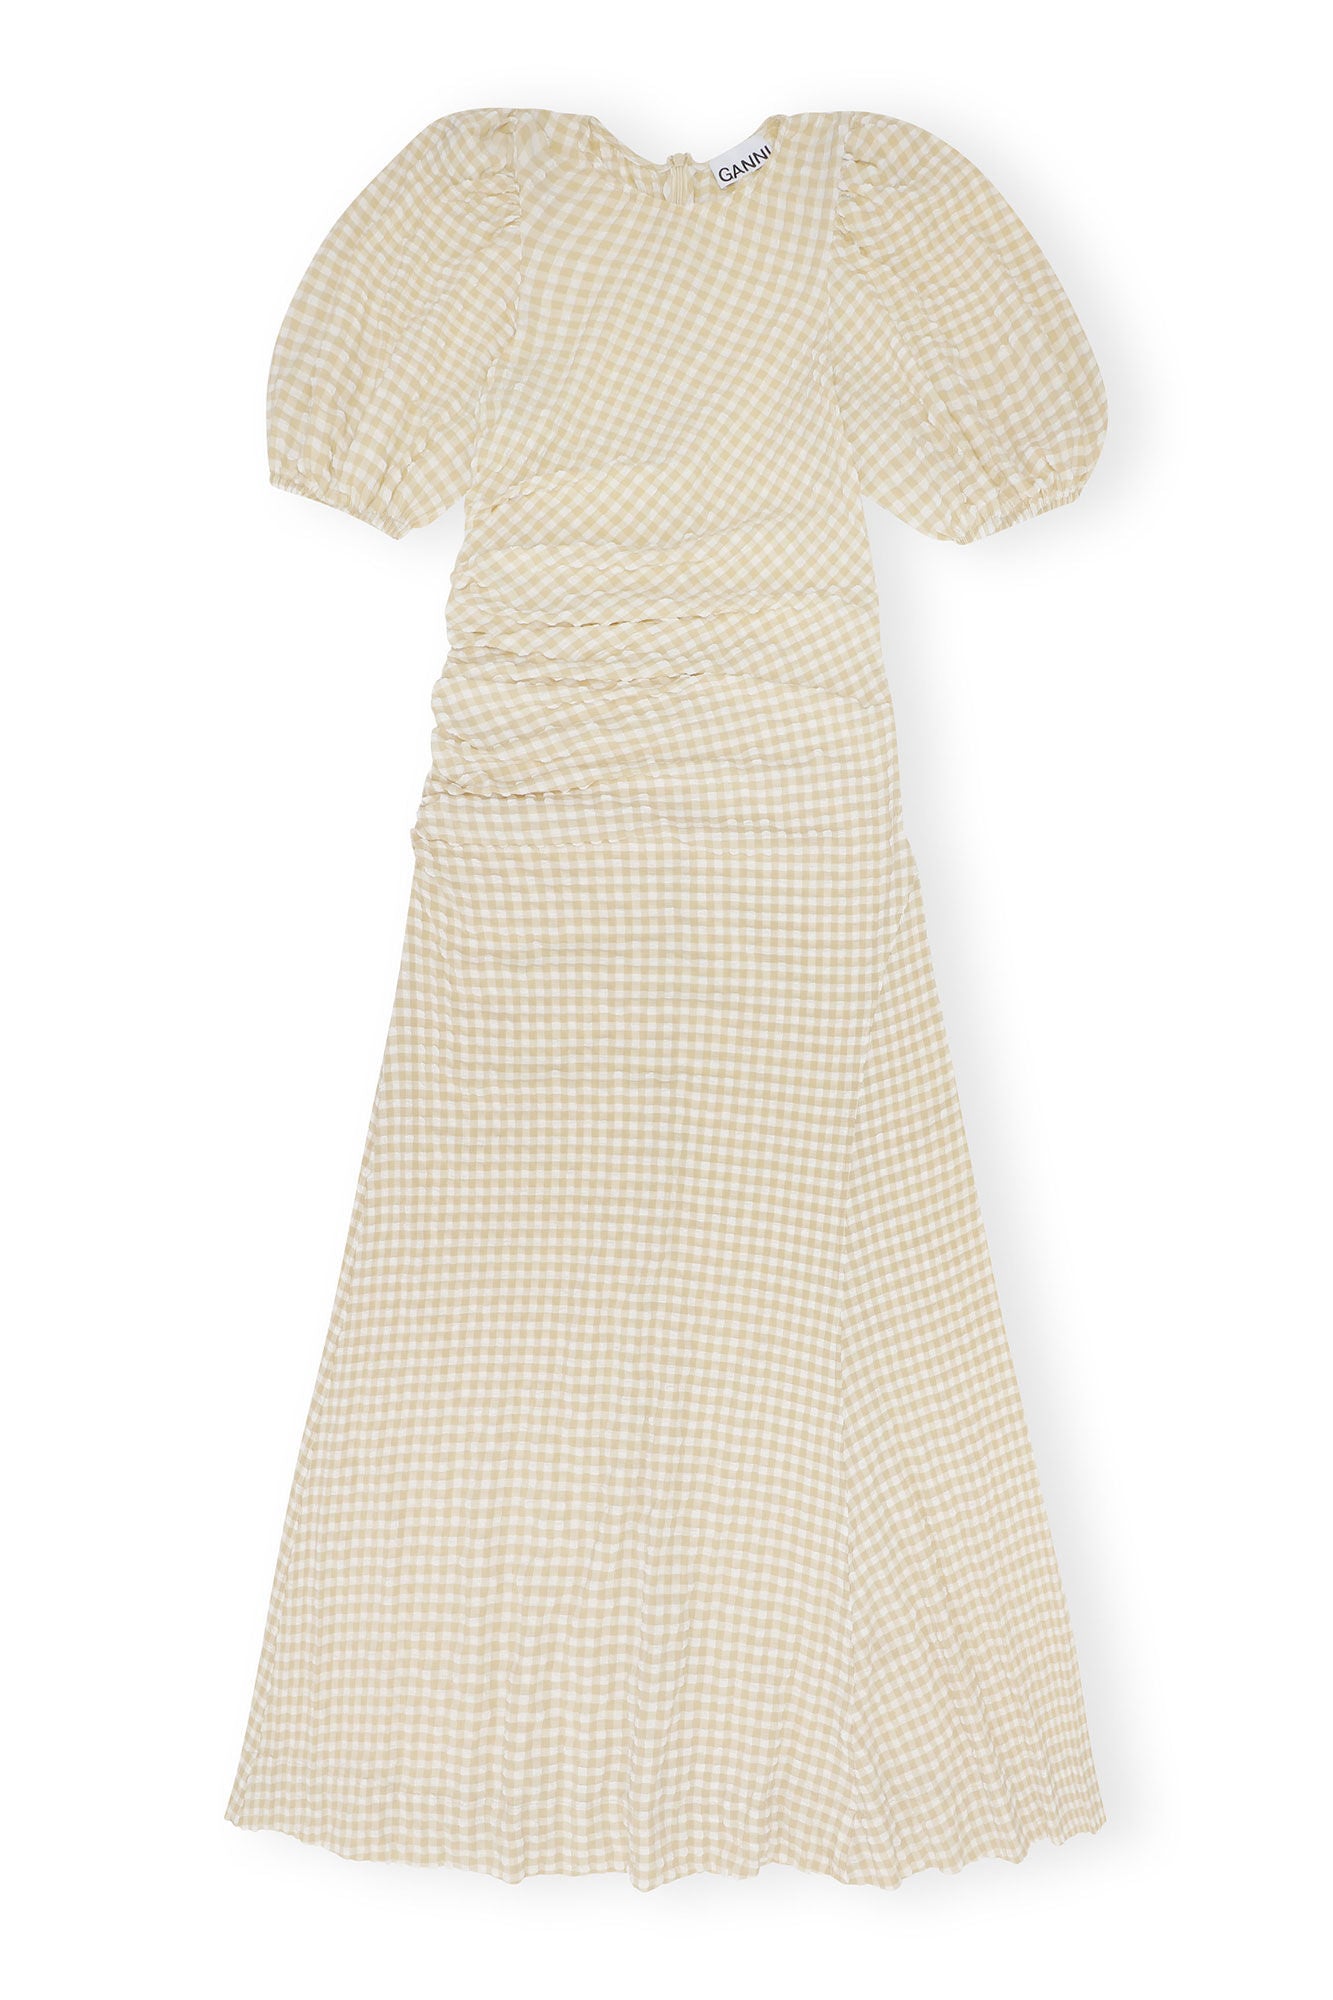 Seersucker Puff Sleeve Dress in Pale Khaki by Ganni http://www.shoprecital.com